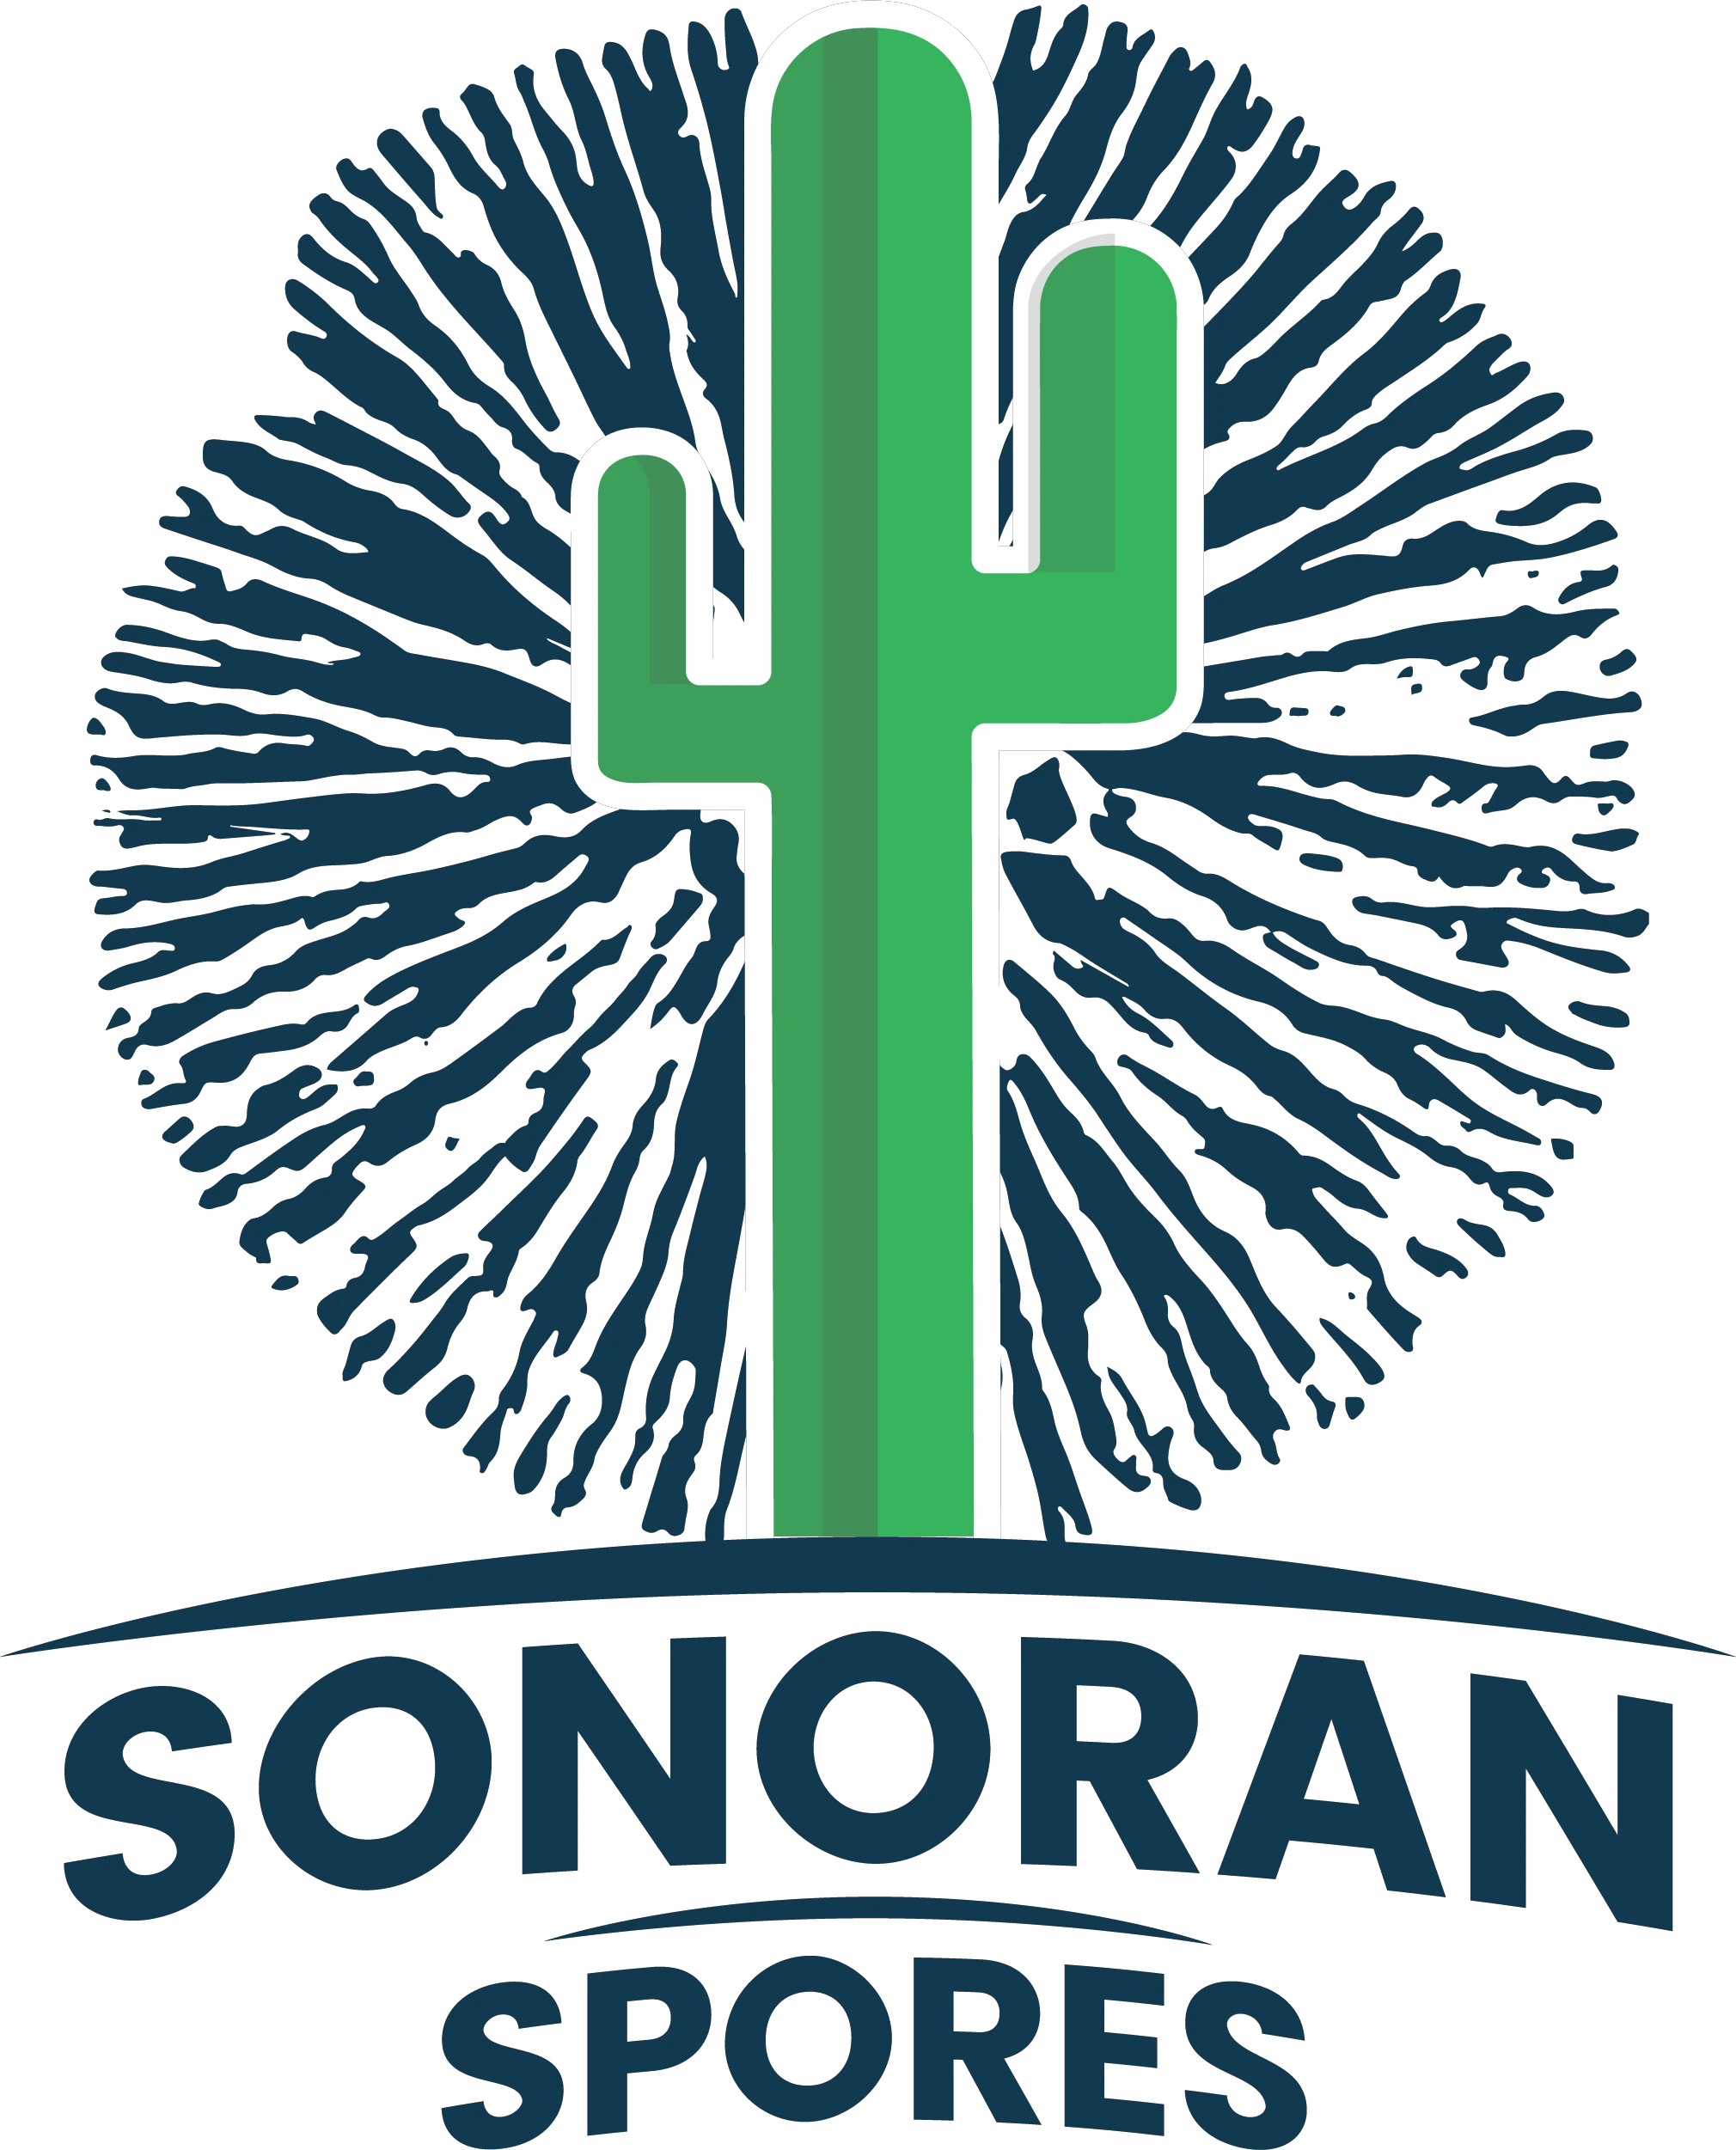 Sonoran Spores